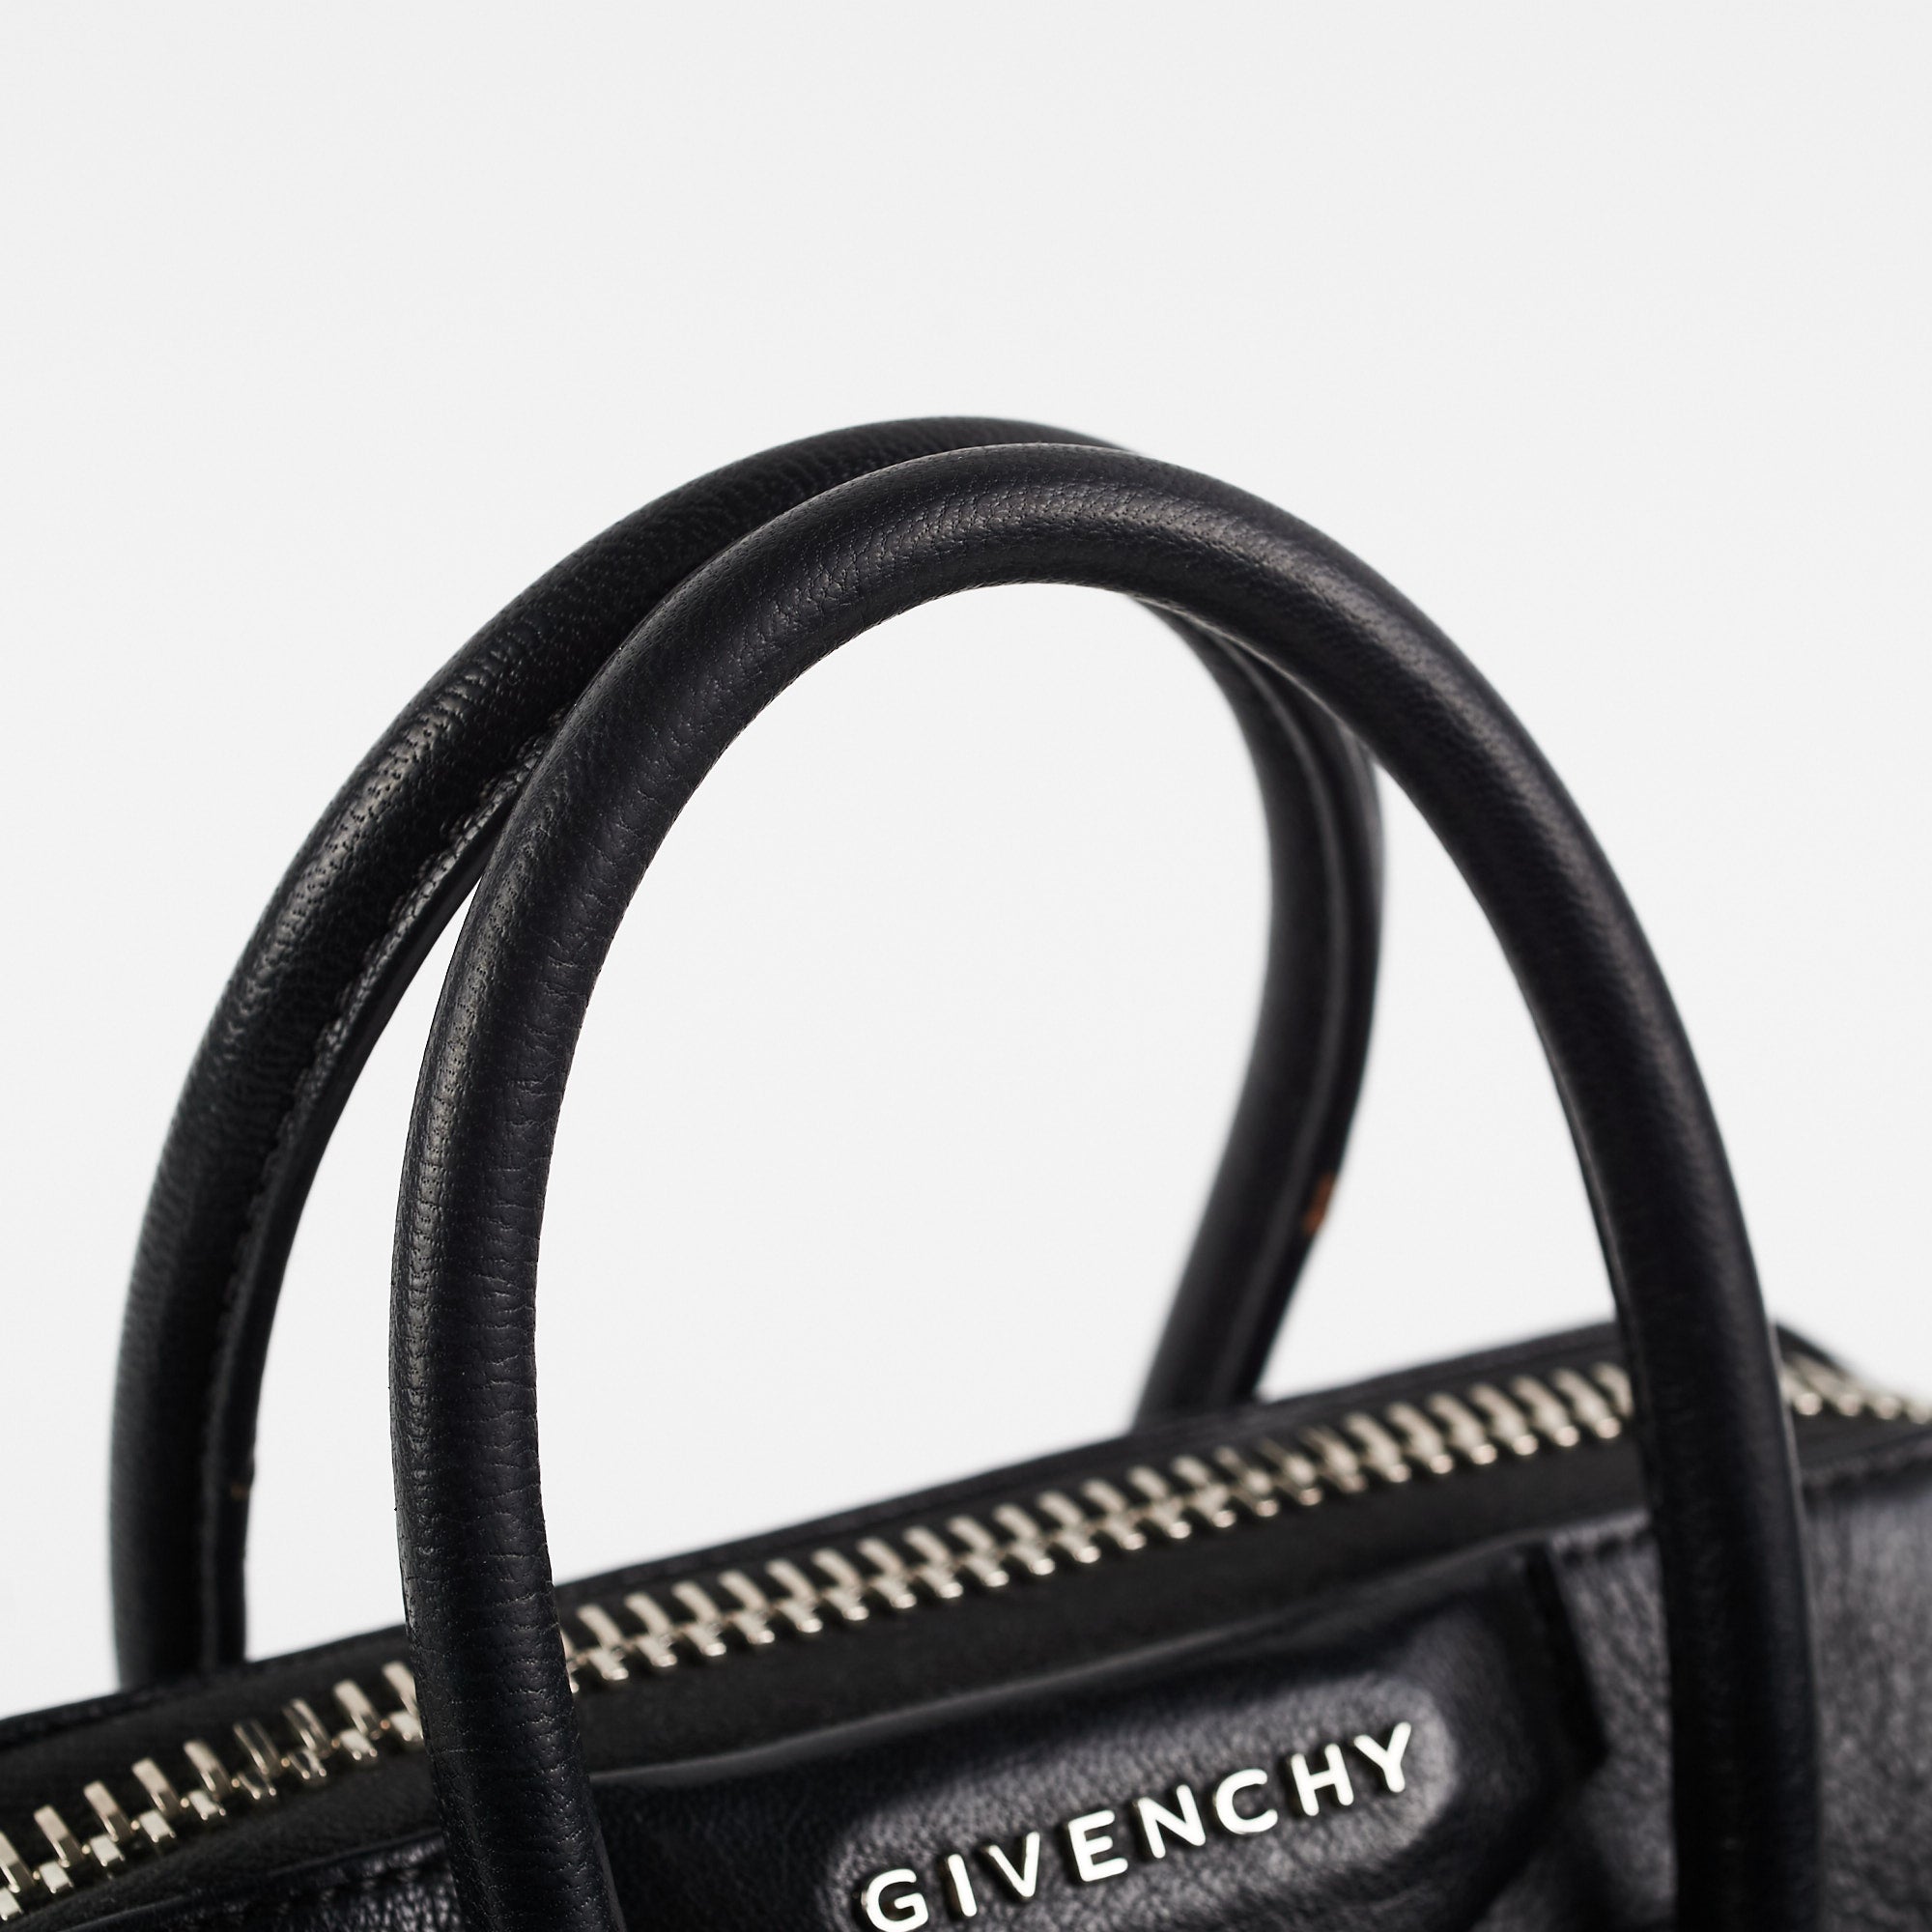 Givenchy Antigona mini leather top handle bag